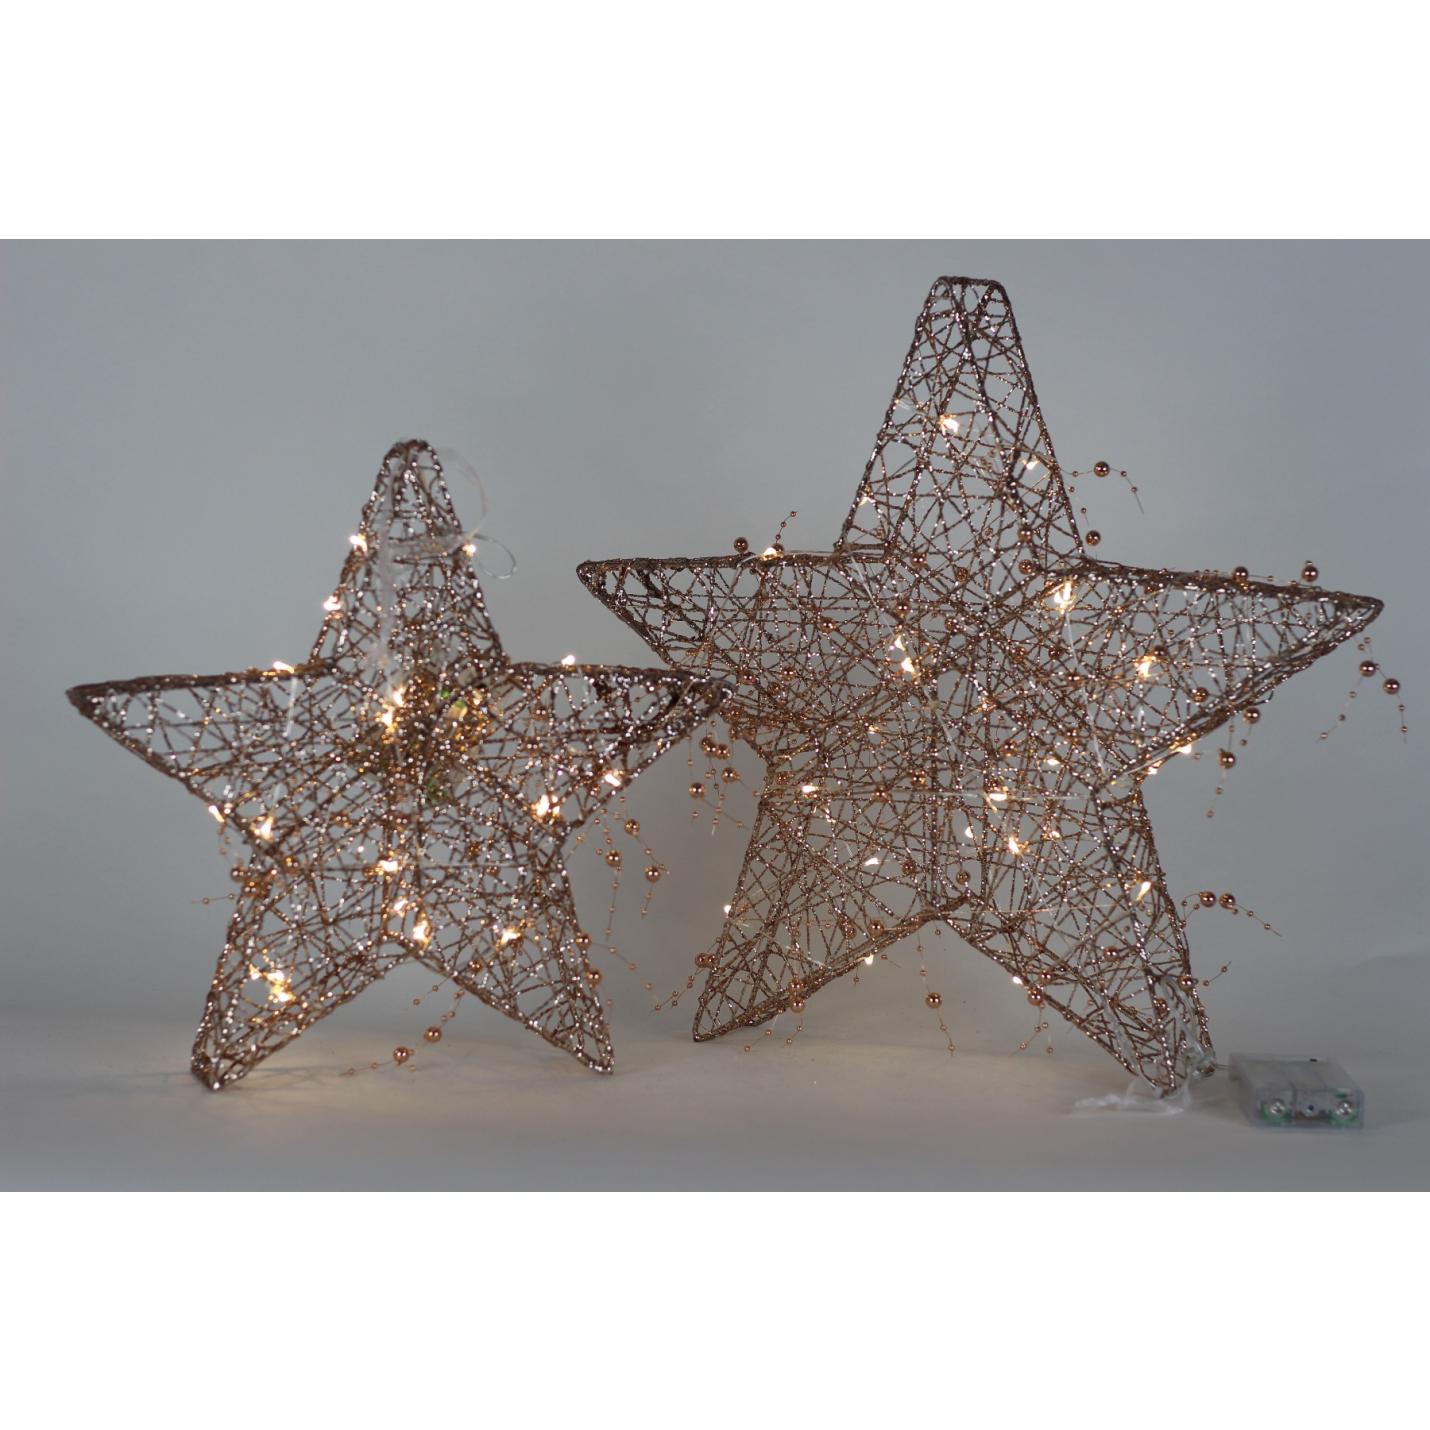 Kerstster - Draadster- 30cm- Goud/glitter/parels met 20 warm witte LEDs